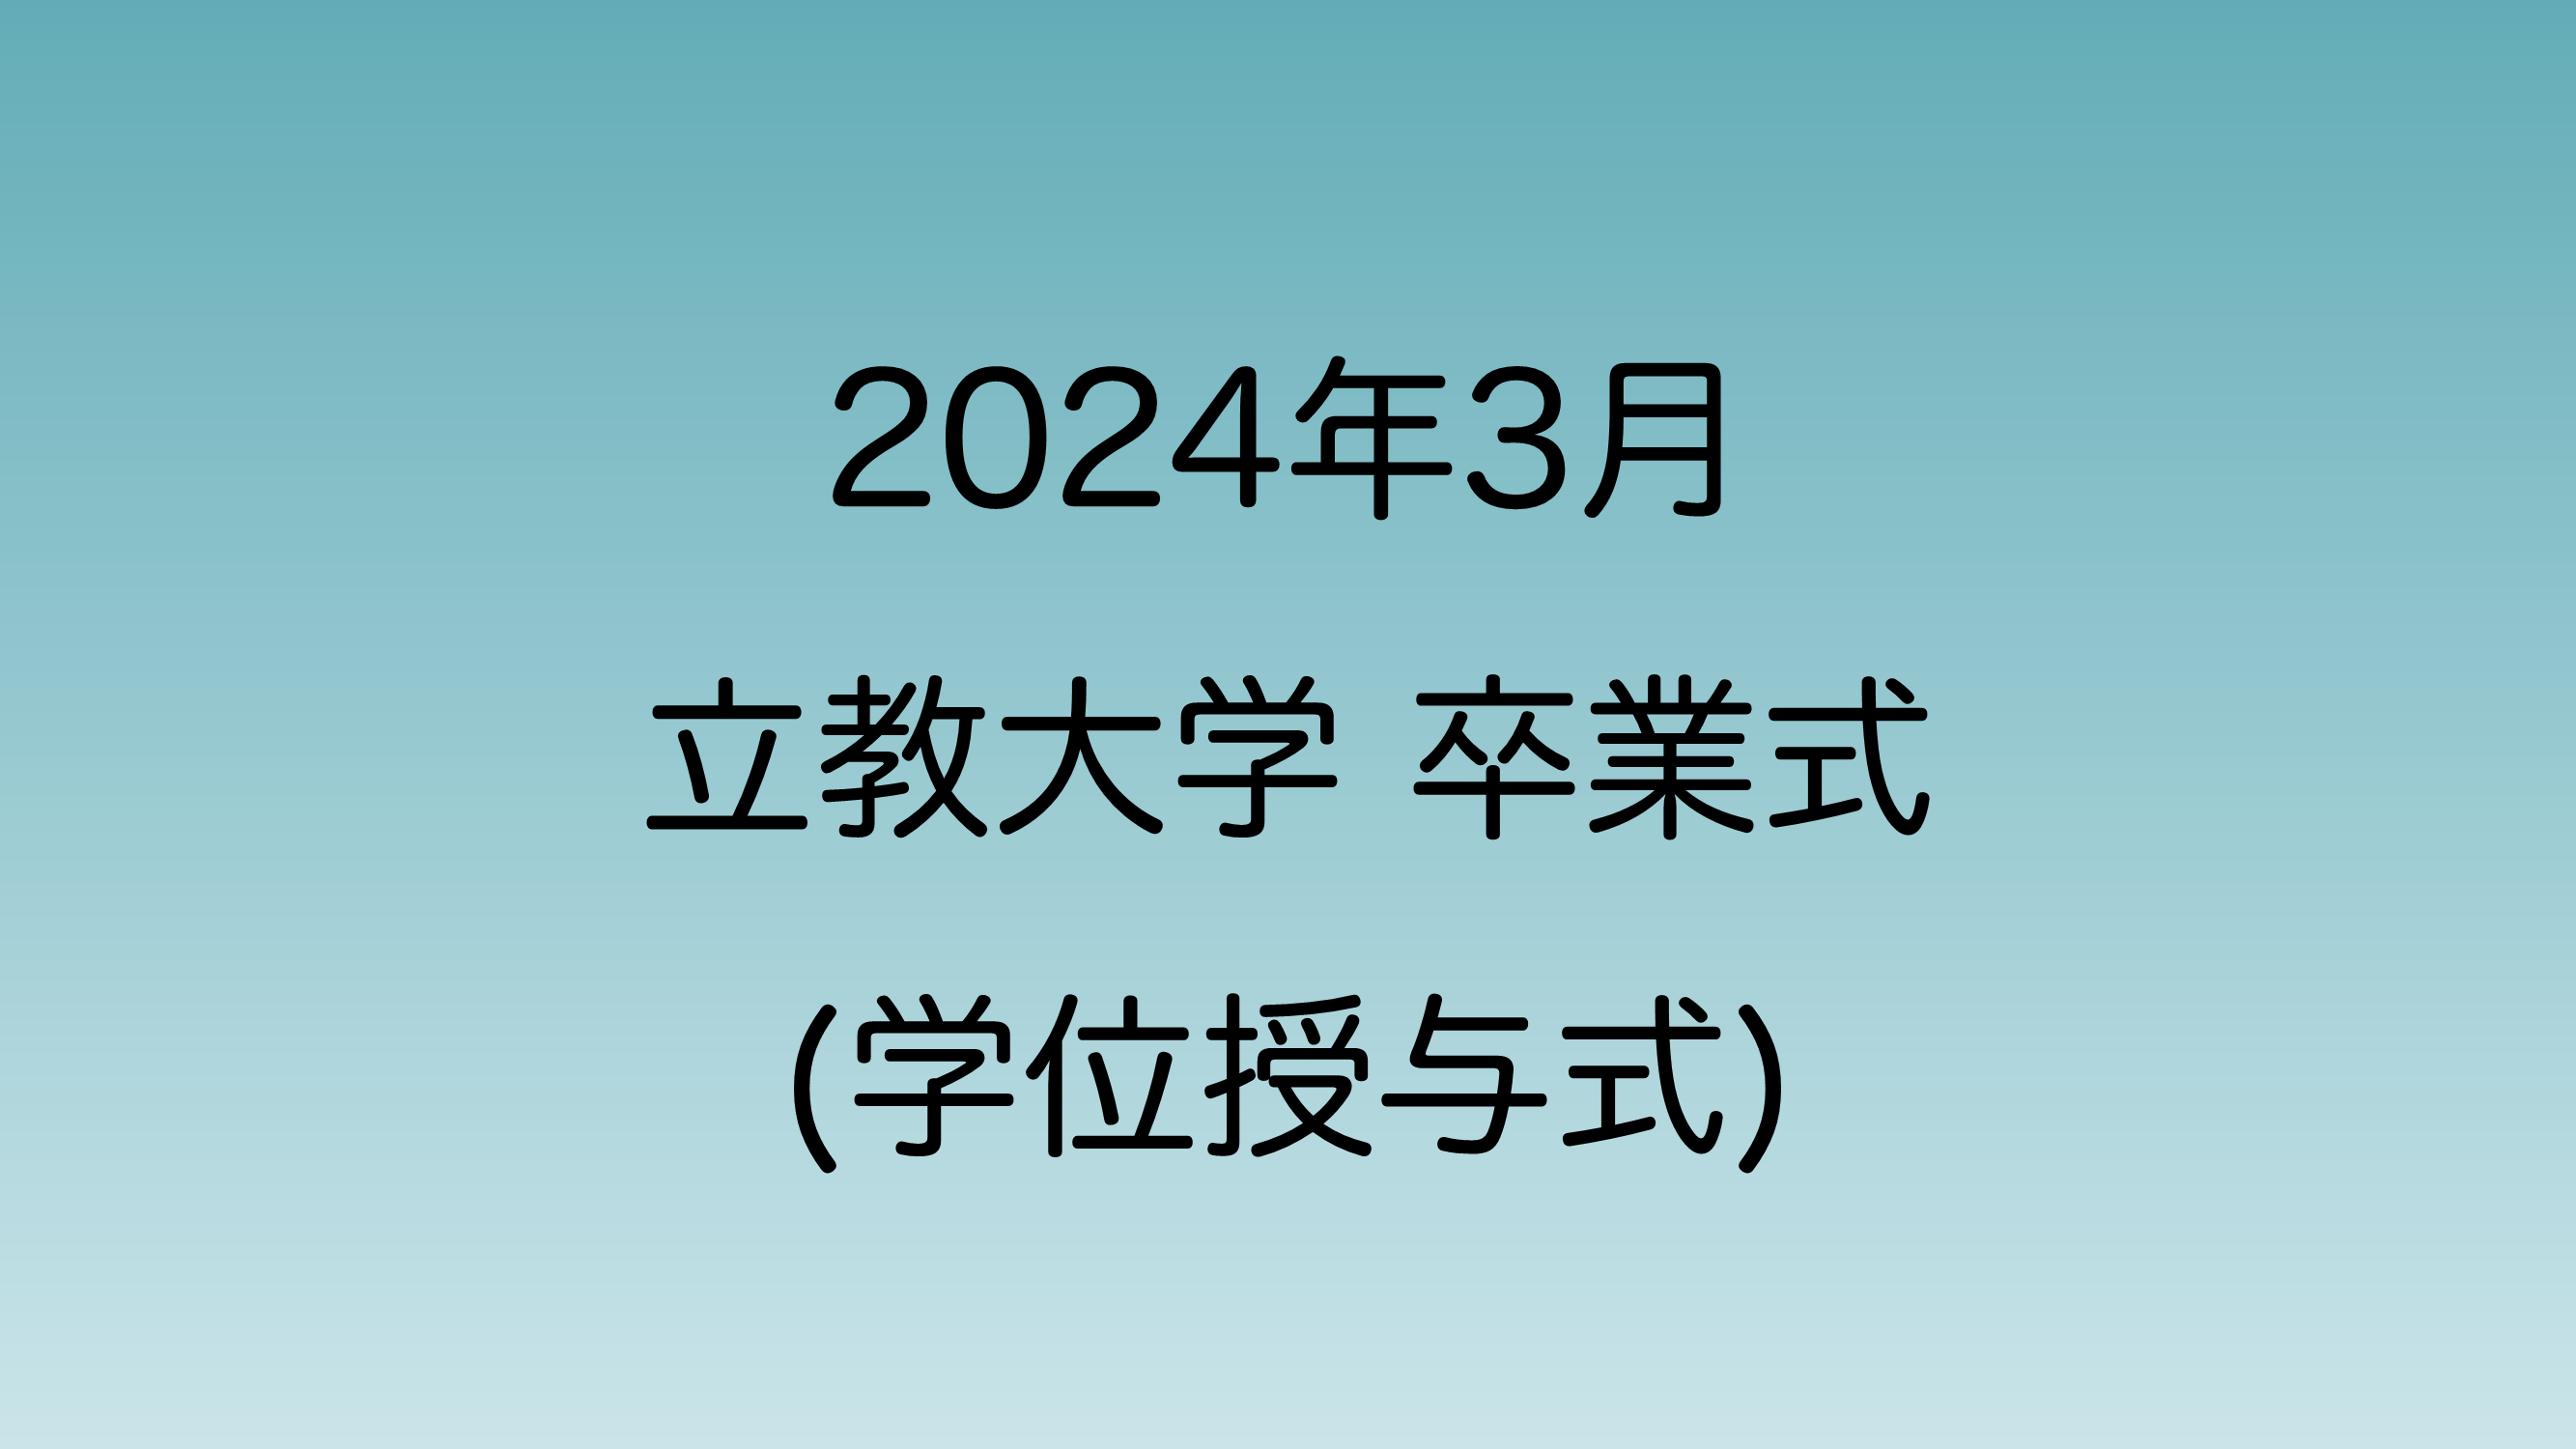 2024年3月に行われる予定の立教大学卒業式